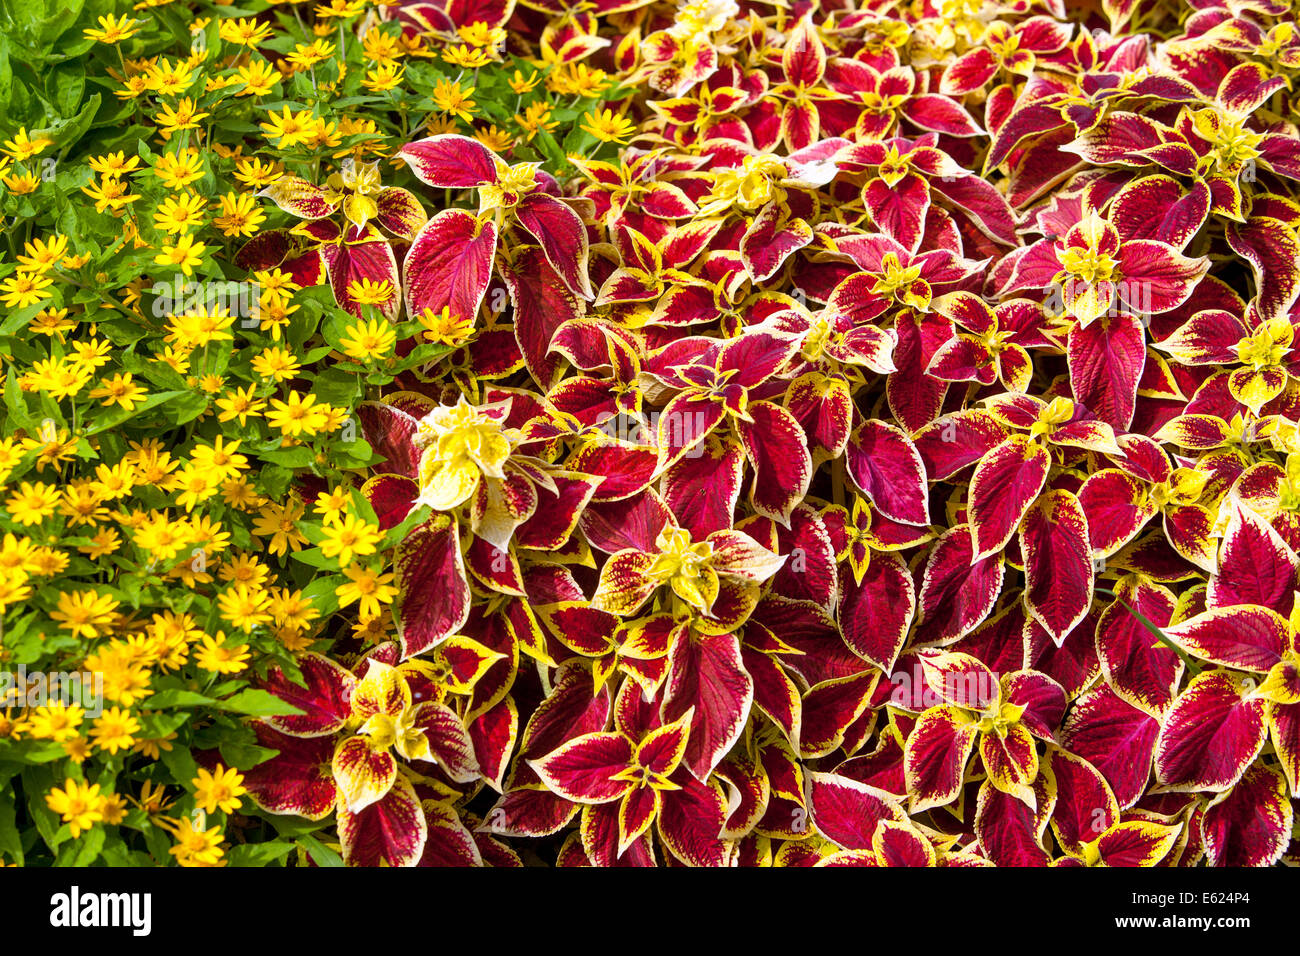 Lit de fleurs colorées de fleurs annuelles, Coleus 'Wizard' écarlate, beurre melampodium Daisy Banque D'Images